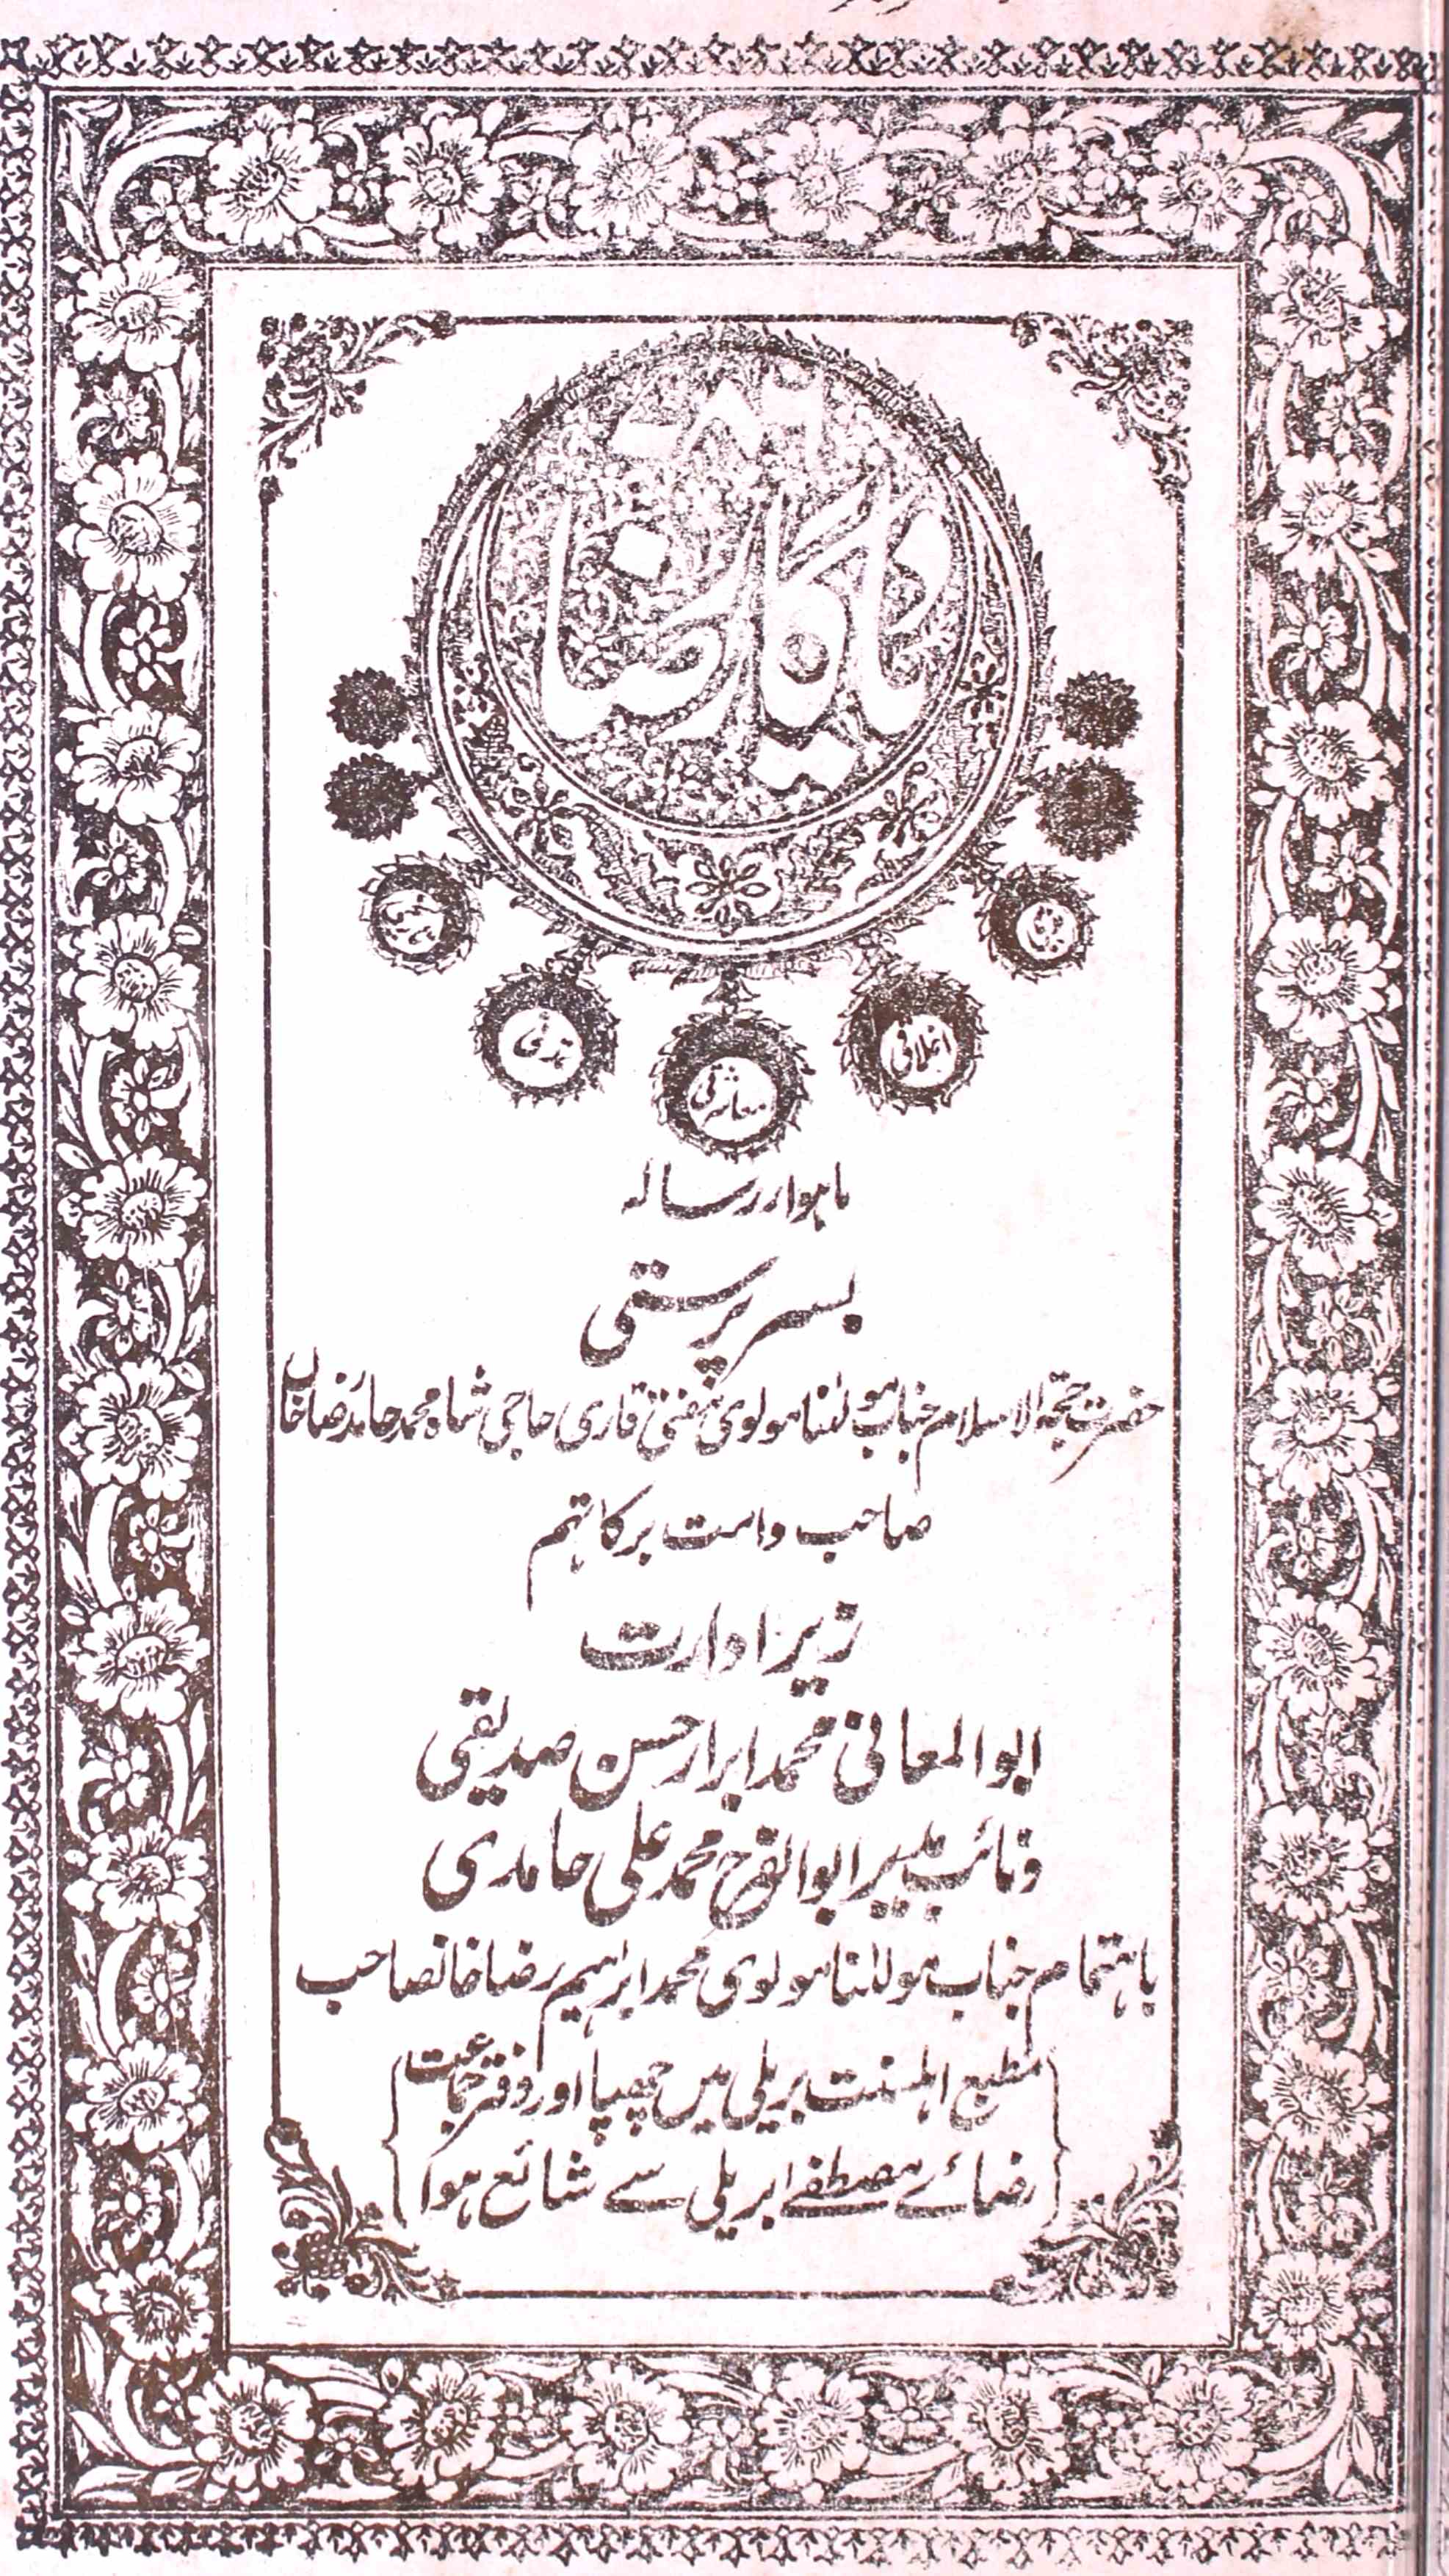 Yadgar e Raza Jild 1 No. 8 Shawwal 1345 Hijri